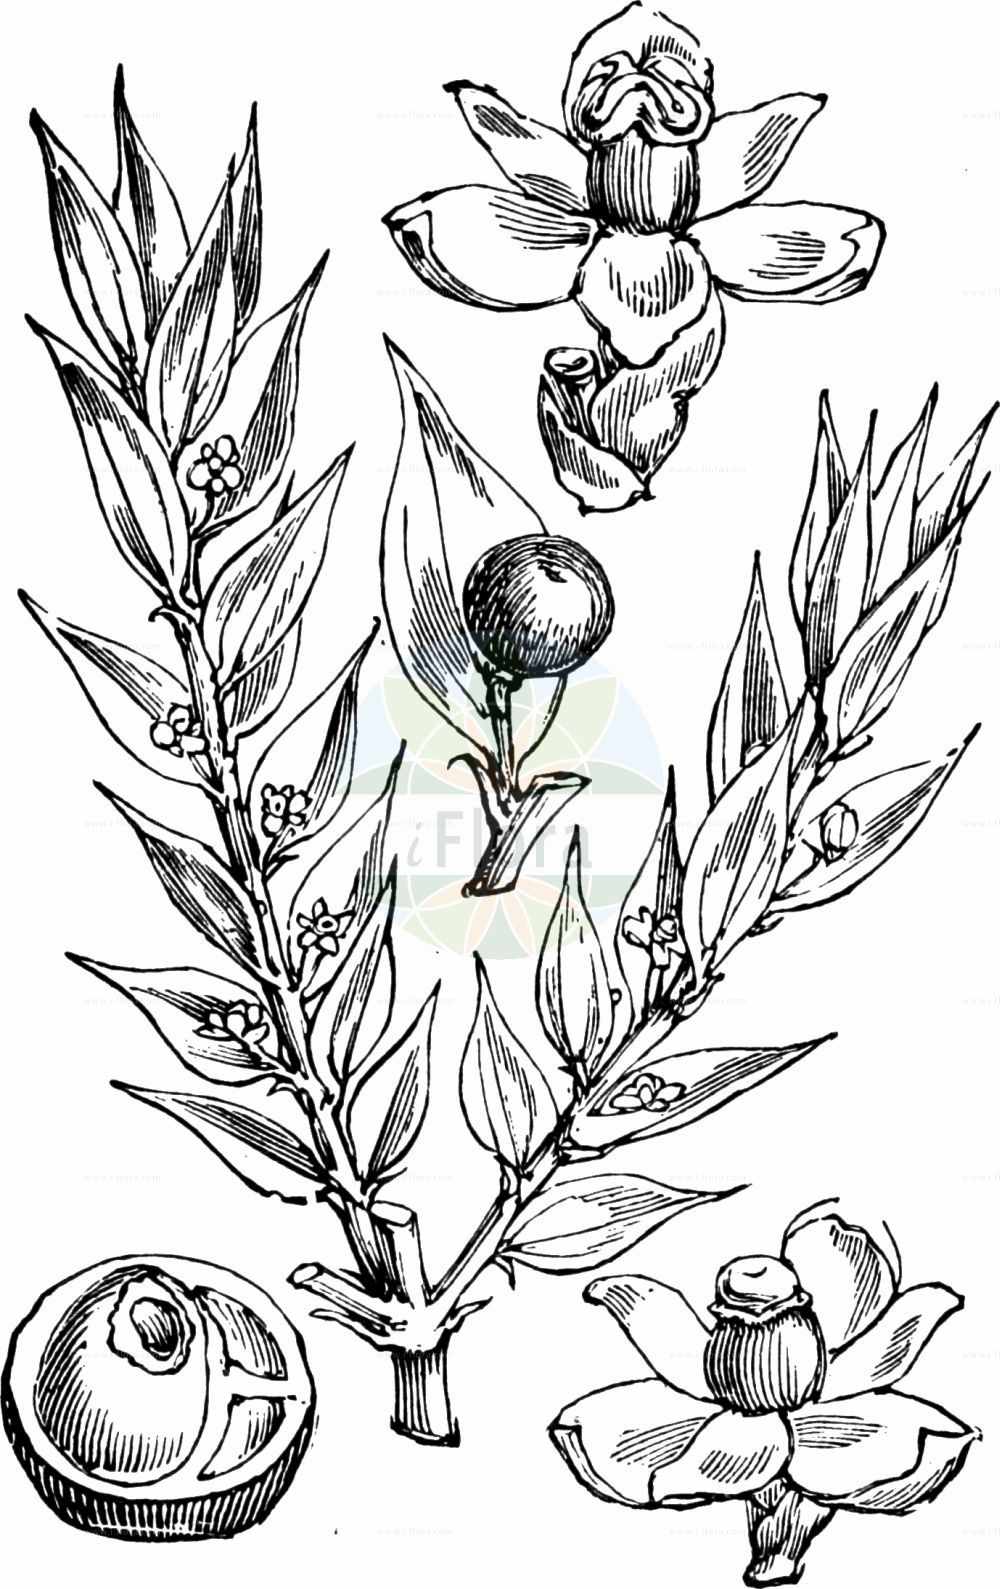 Historische Abbildung von Ruscus aculeatus (Butcher's-broom). Das Bild zeigt Blatt, Bluete, Frucht und Same. ---- Historical Drawing of Ruscus aculeatus (Butcher's-broom). The image is showing leaf, flower, fruit and seed.(Ruscus aculeatus,Butcher's-broom,Oxymyrsine pungens,Ruscus aculeatus,Ruscus flexuosus,Ruscus laxus,Ruscus parasiticus,Ruscus ponticus,Ruscus,Asparagaceae,Spargelgewächse,Asparagus family,Blatt,Bluete,Frucht,Same,leaf,flower,fruit,seed,Fitch et al. (1880))